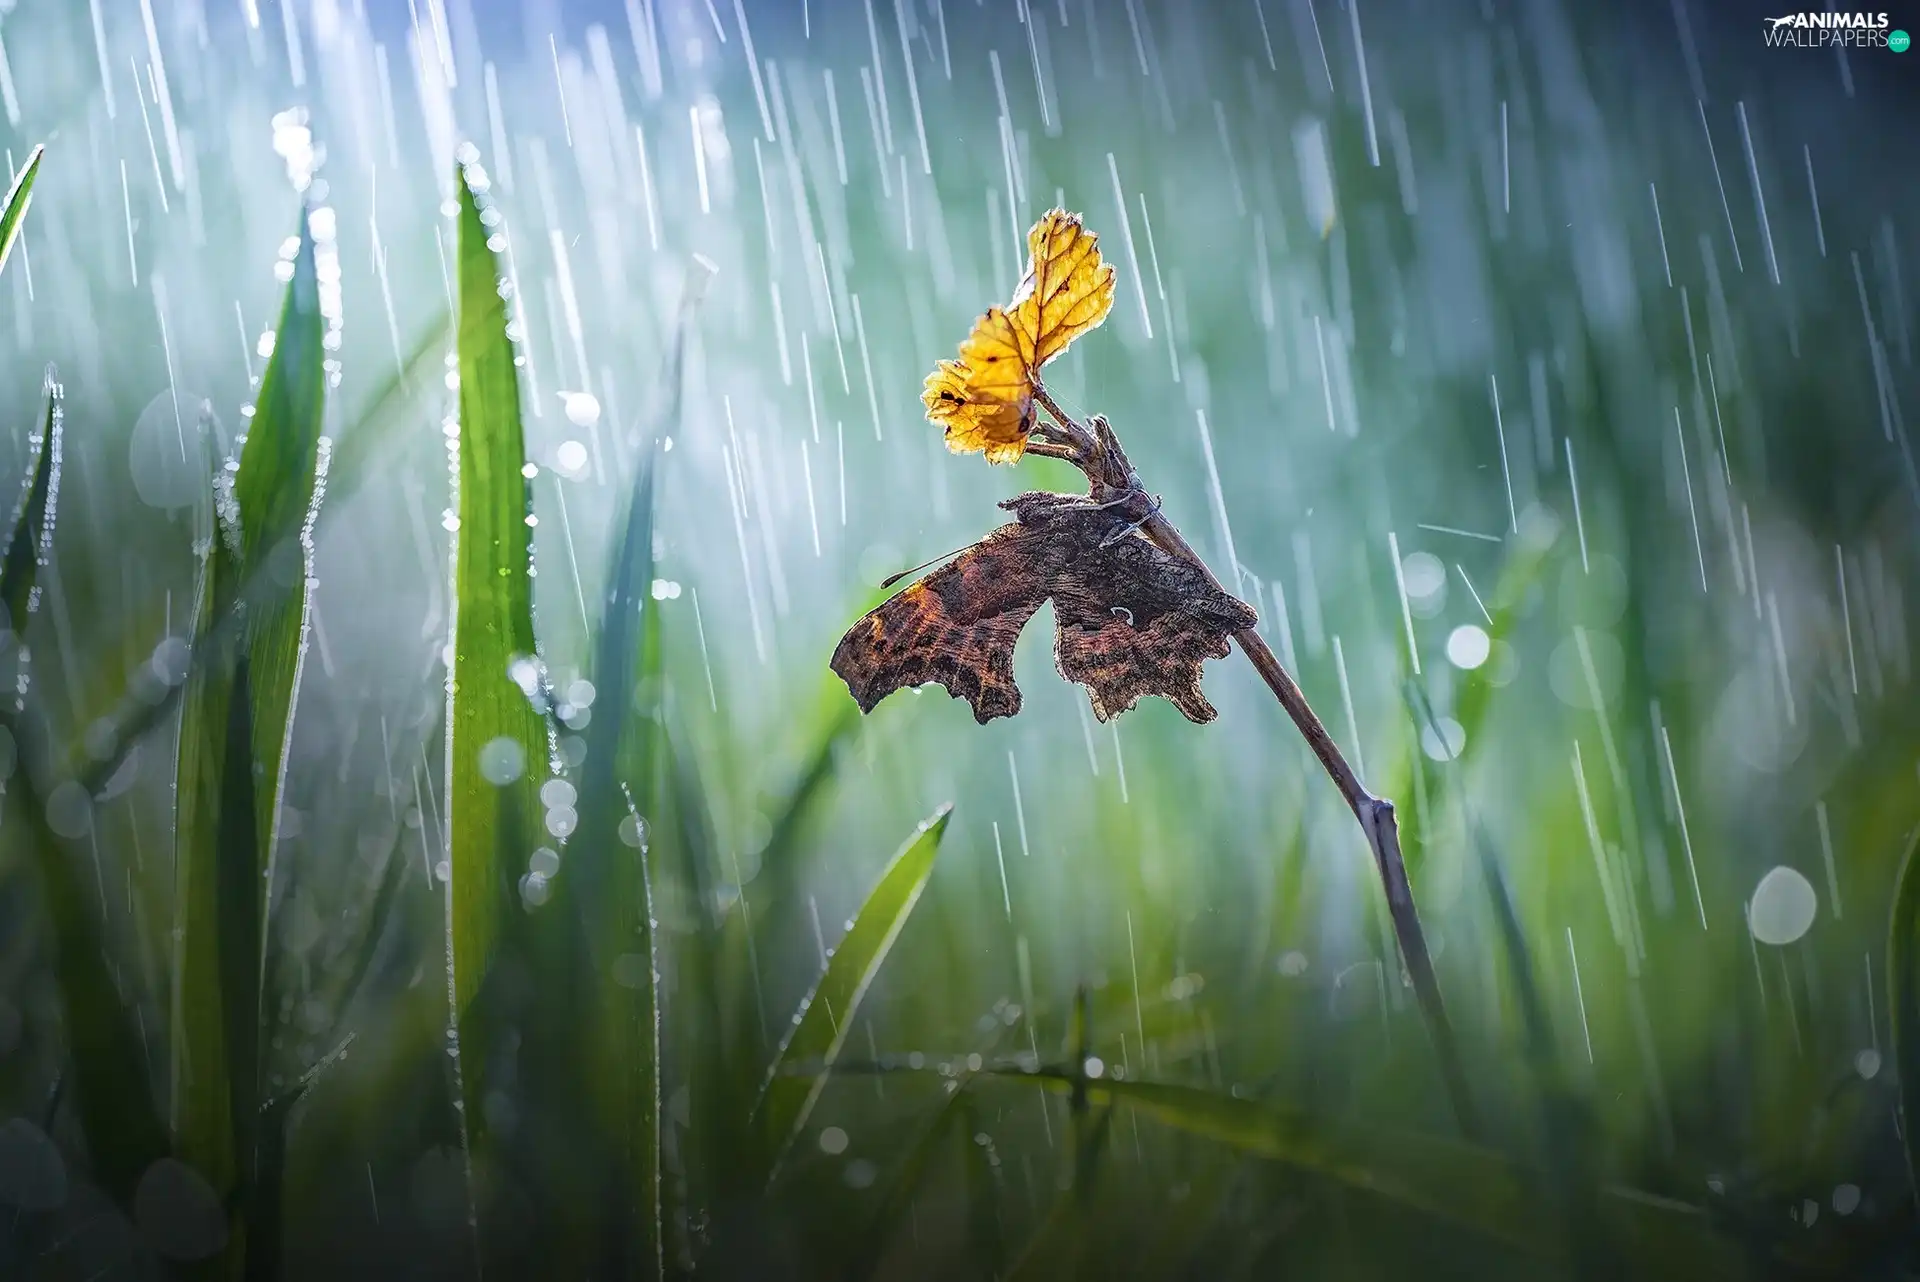 butterfly, Bokeh, twig, Rain, grass